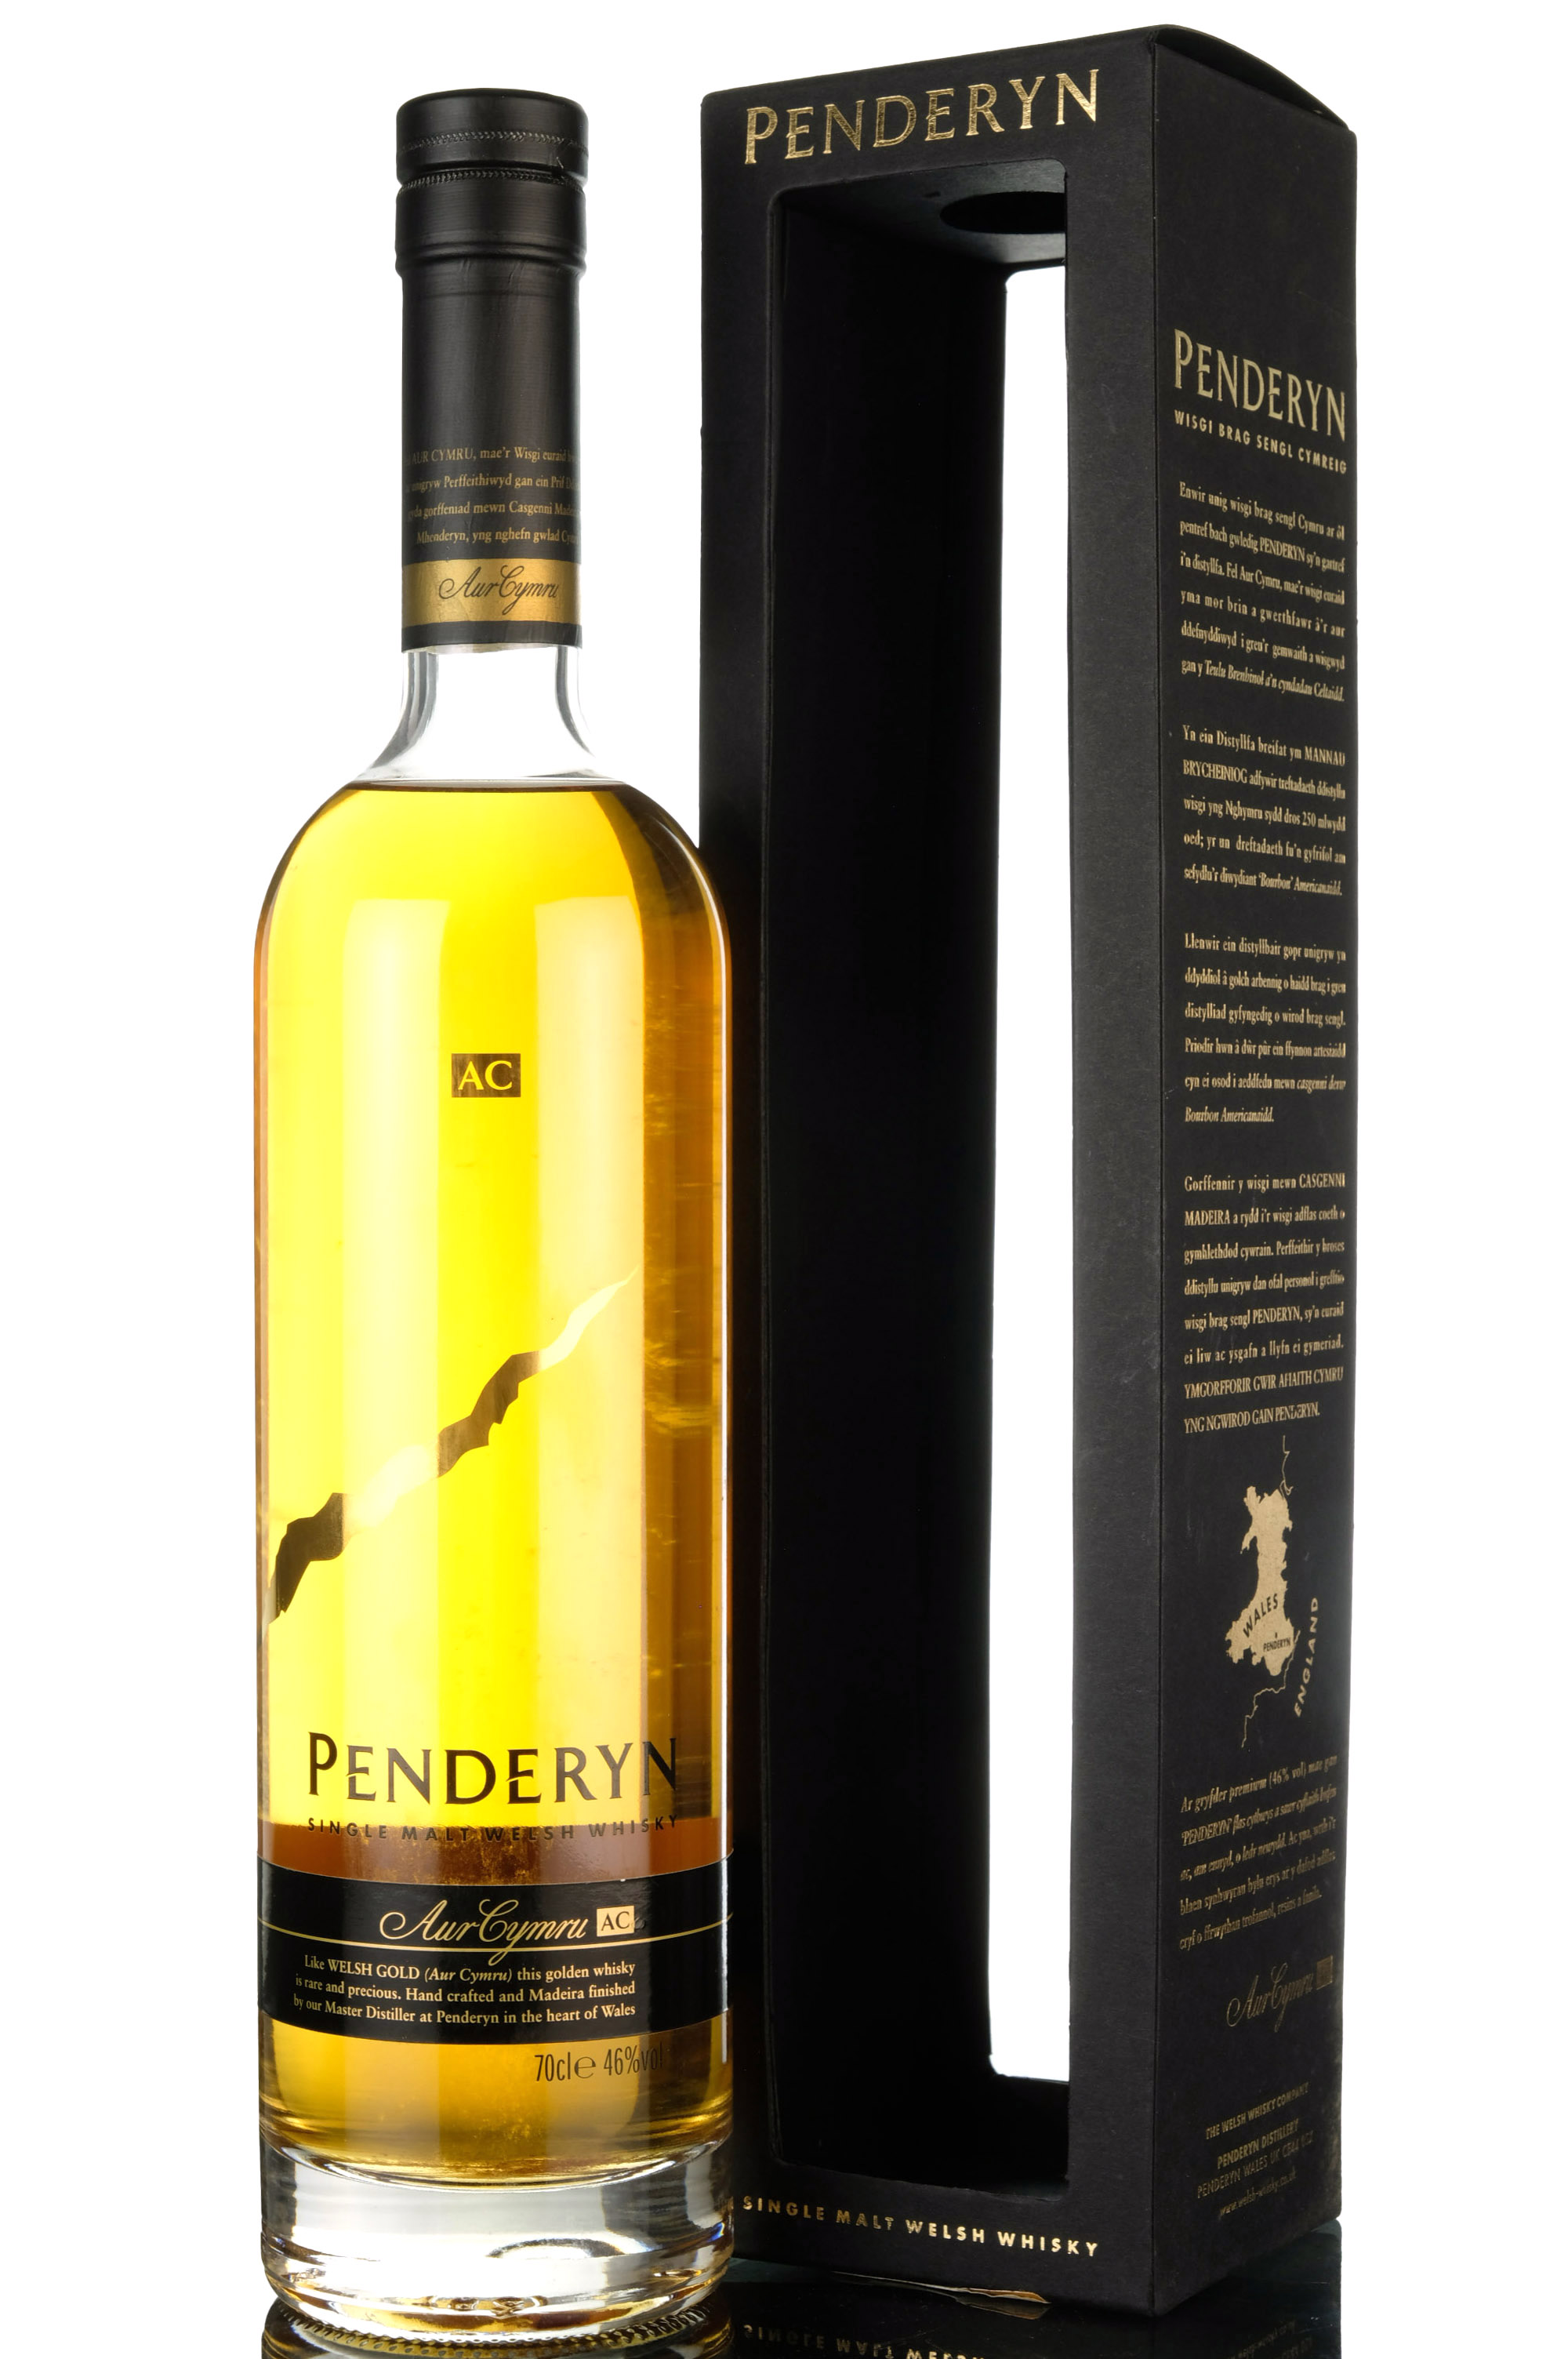 Penderyn - 2008 Release